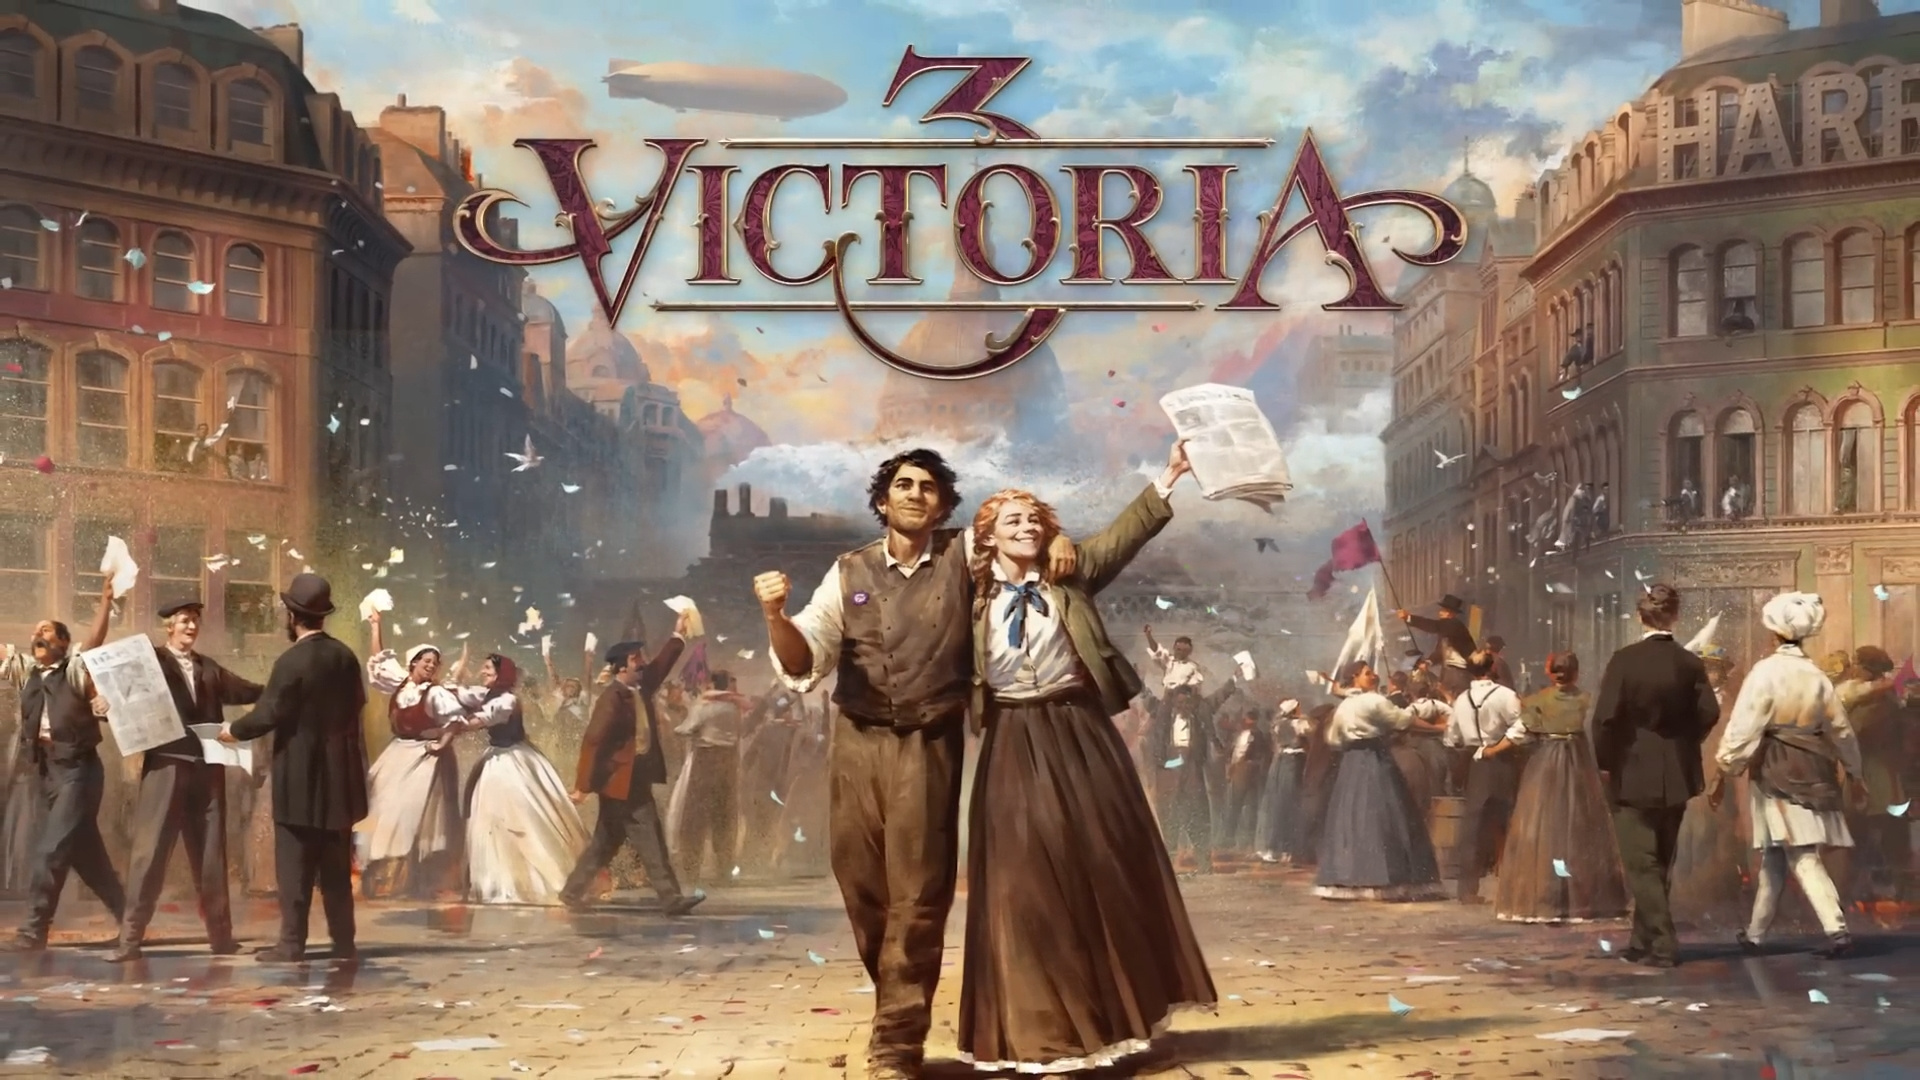 Victoria 3 получает отличные оценки от критиков, недавно игру передумали выпускать в Game Pass